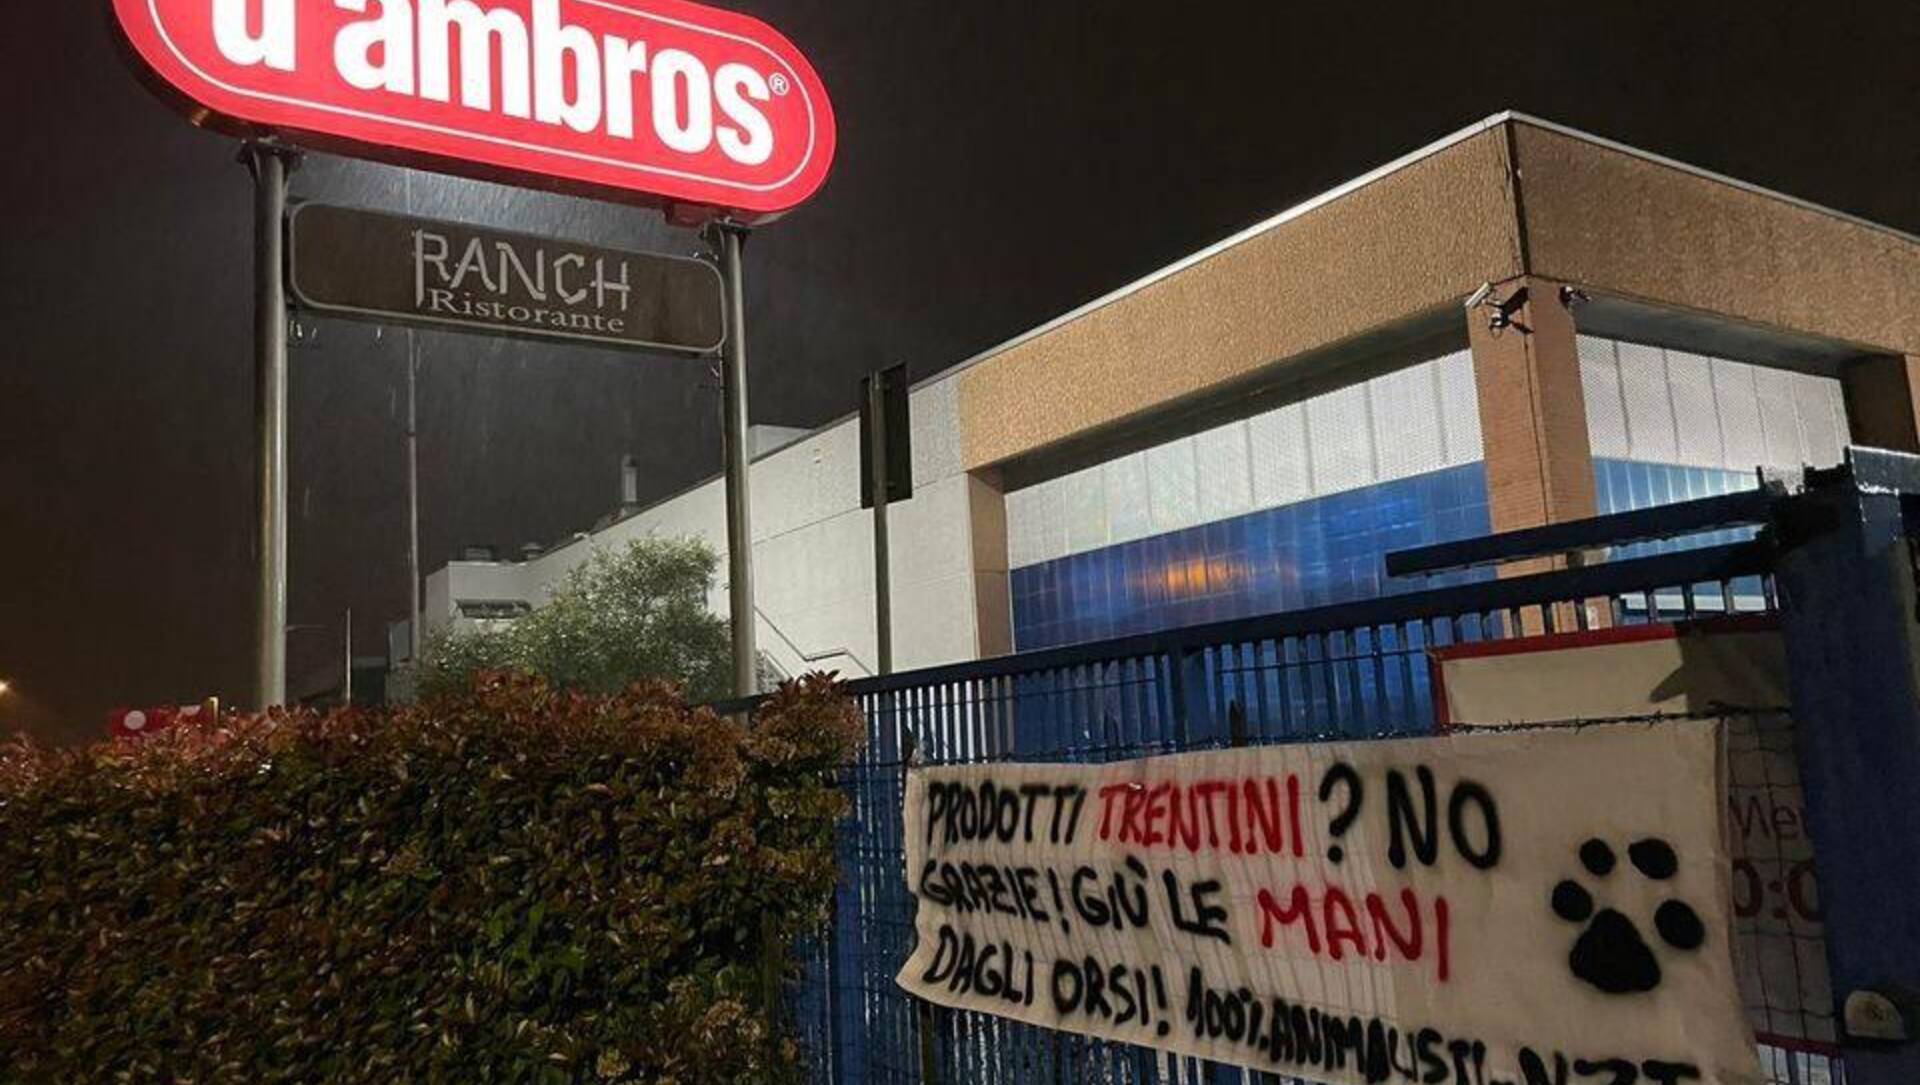 D’Ambros a Turate, Tigros a Caronno, Esselunga a Monza: blitz notturno per boicottare il Trentino